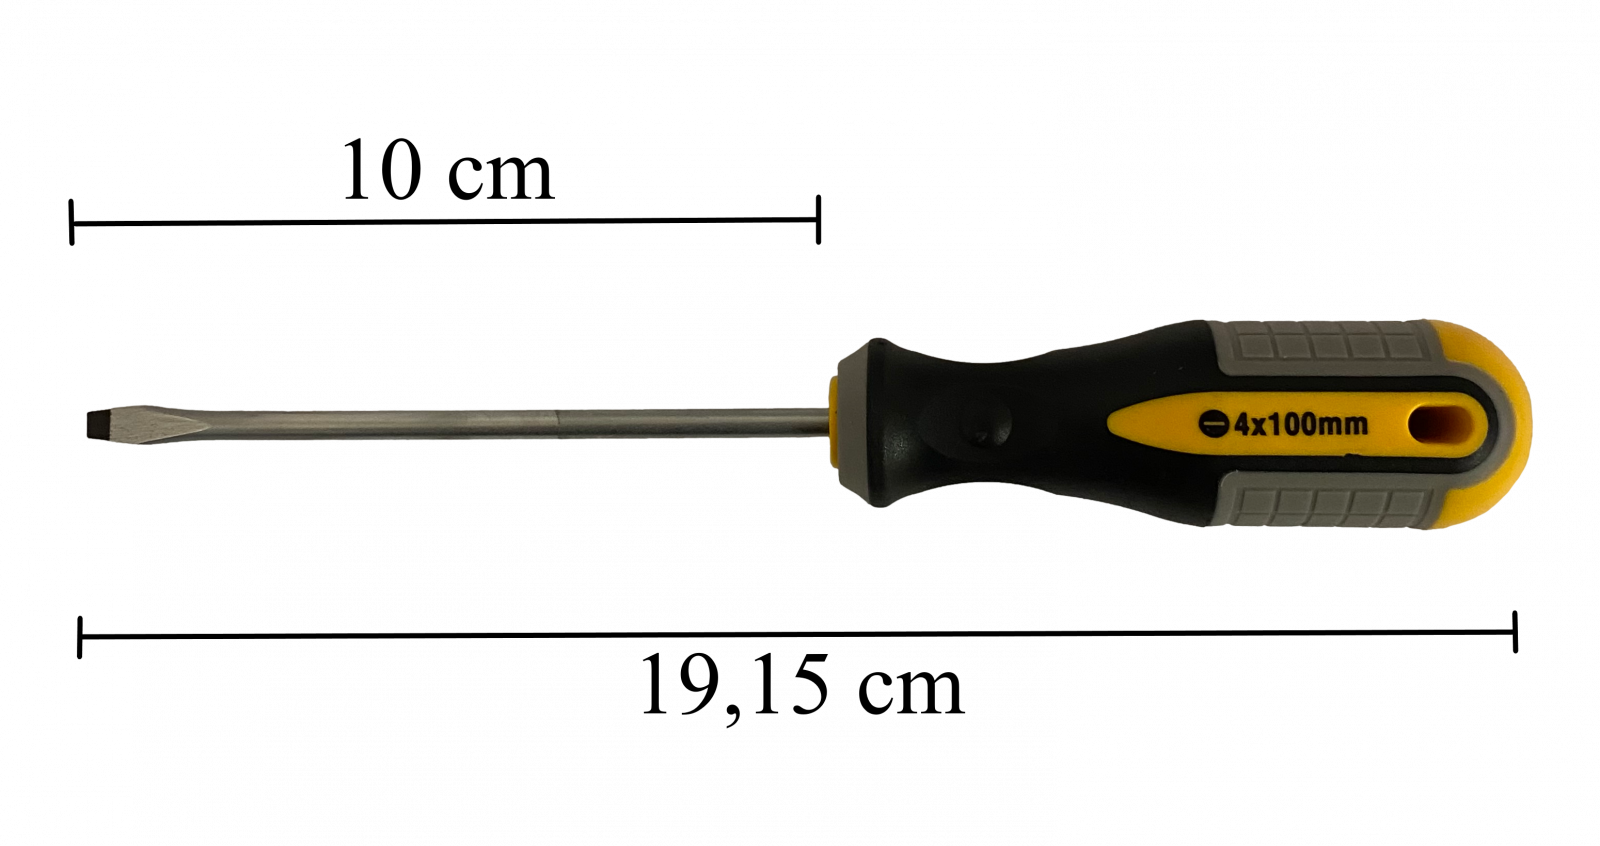 Flat Head Screwdriver, 4x100MM, Strend PRO CX372.1 Univerzální